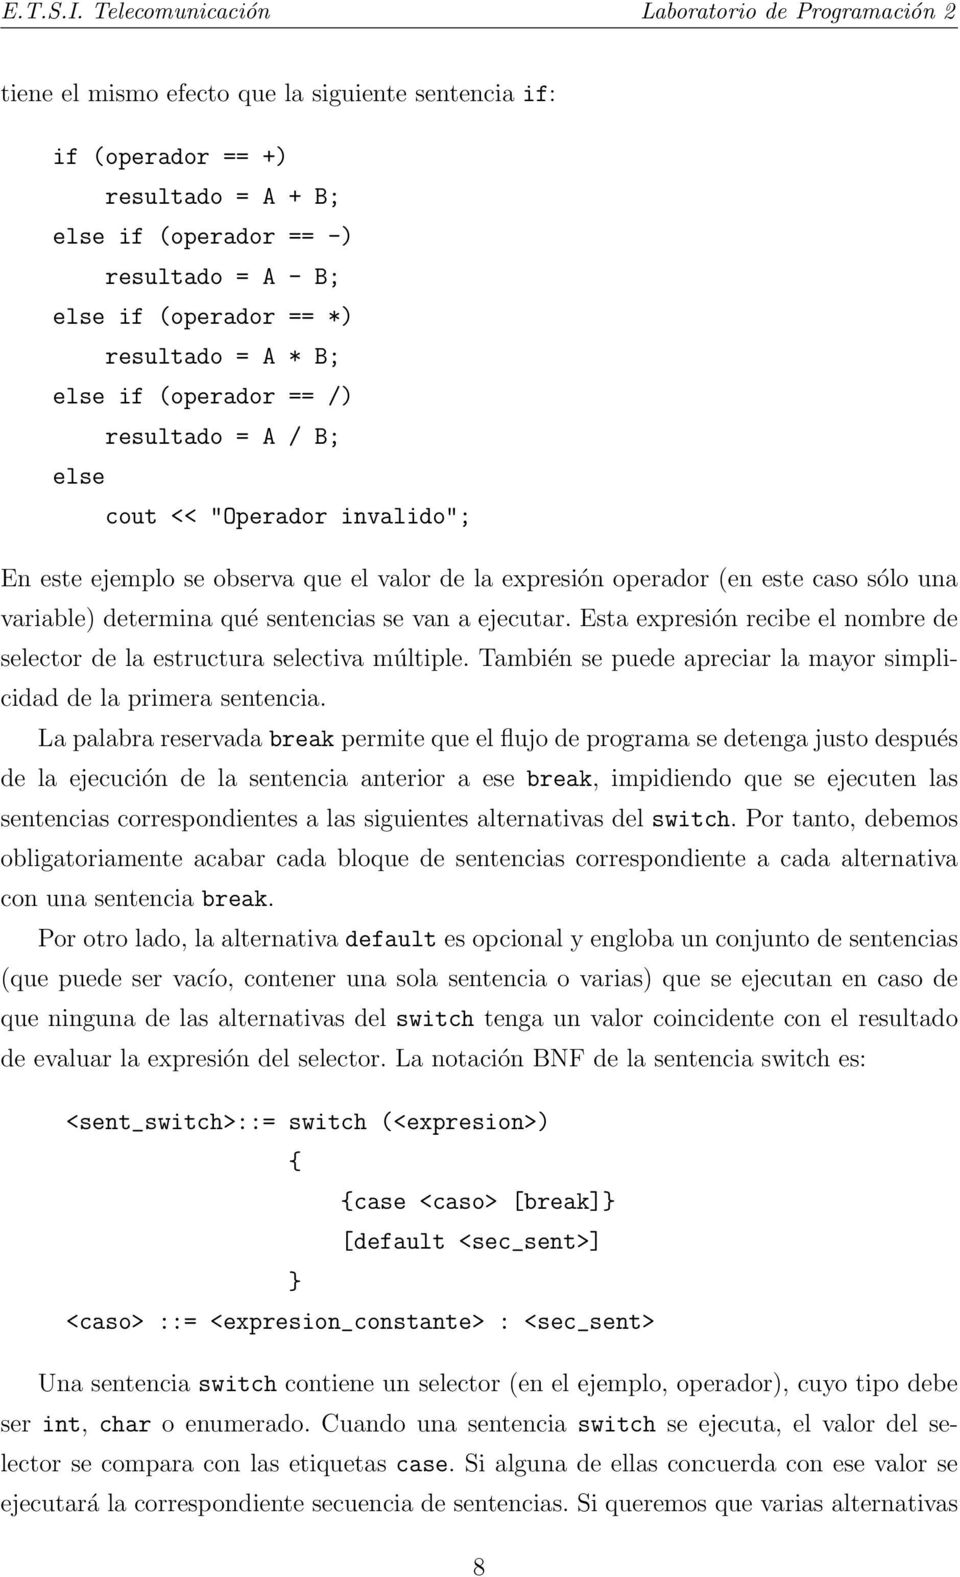 resultado = A * B; if (operador == /) resultado = A / B; cout << "Operador invalido"; En este ejemplo se observa que el valor de la expresión operador (en este caso sólo una variable) determina qué